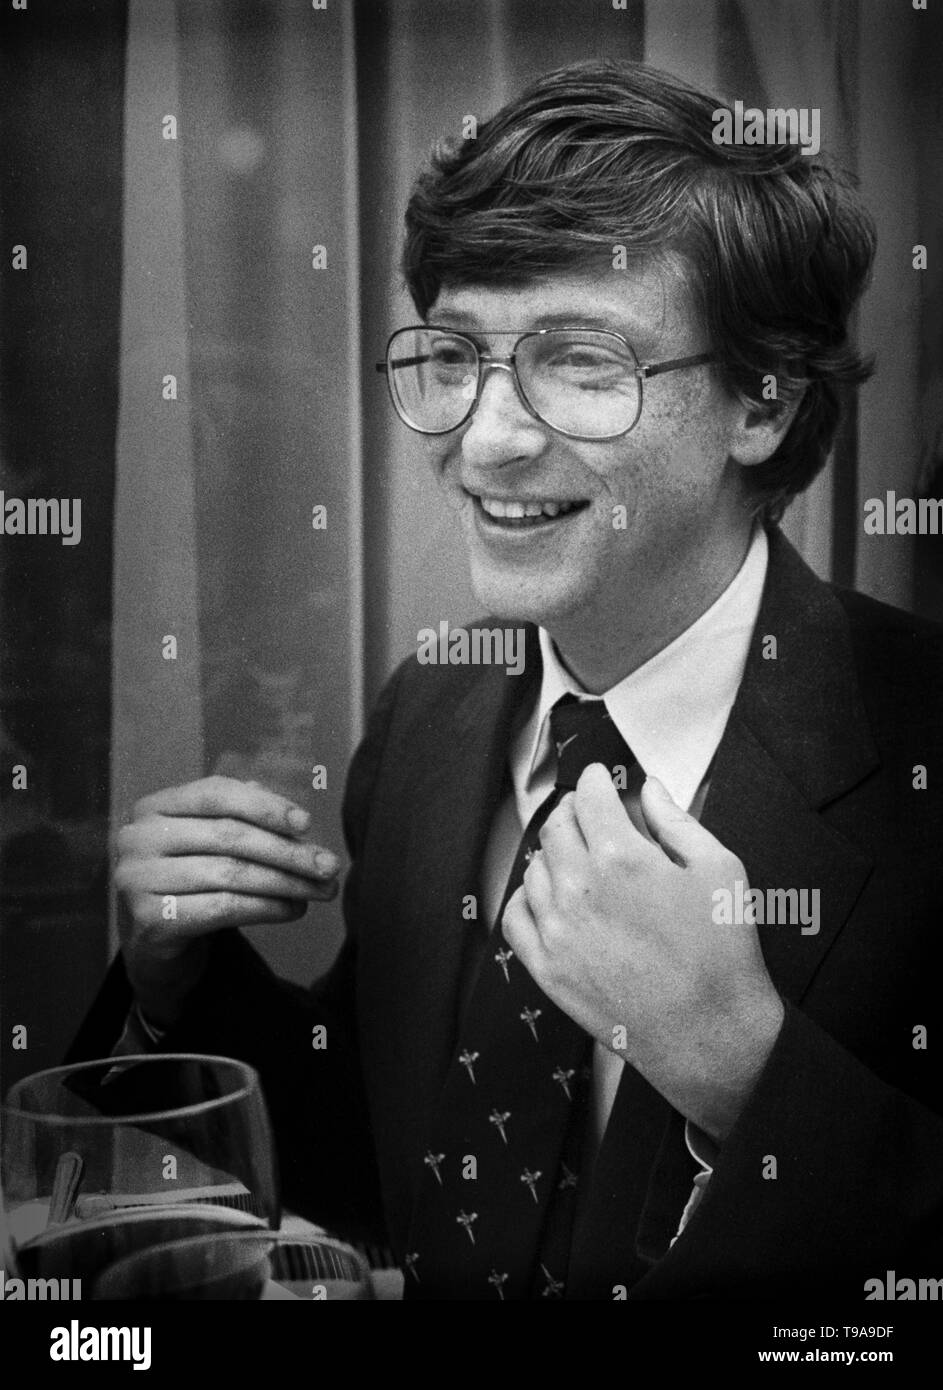 Bill Gates au cours d'une conférence de presse à Amsterdam, Pays-Bas. Appr. 1986 Banque D'Images